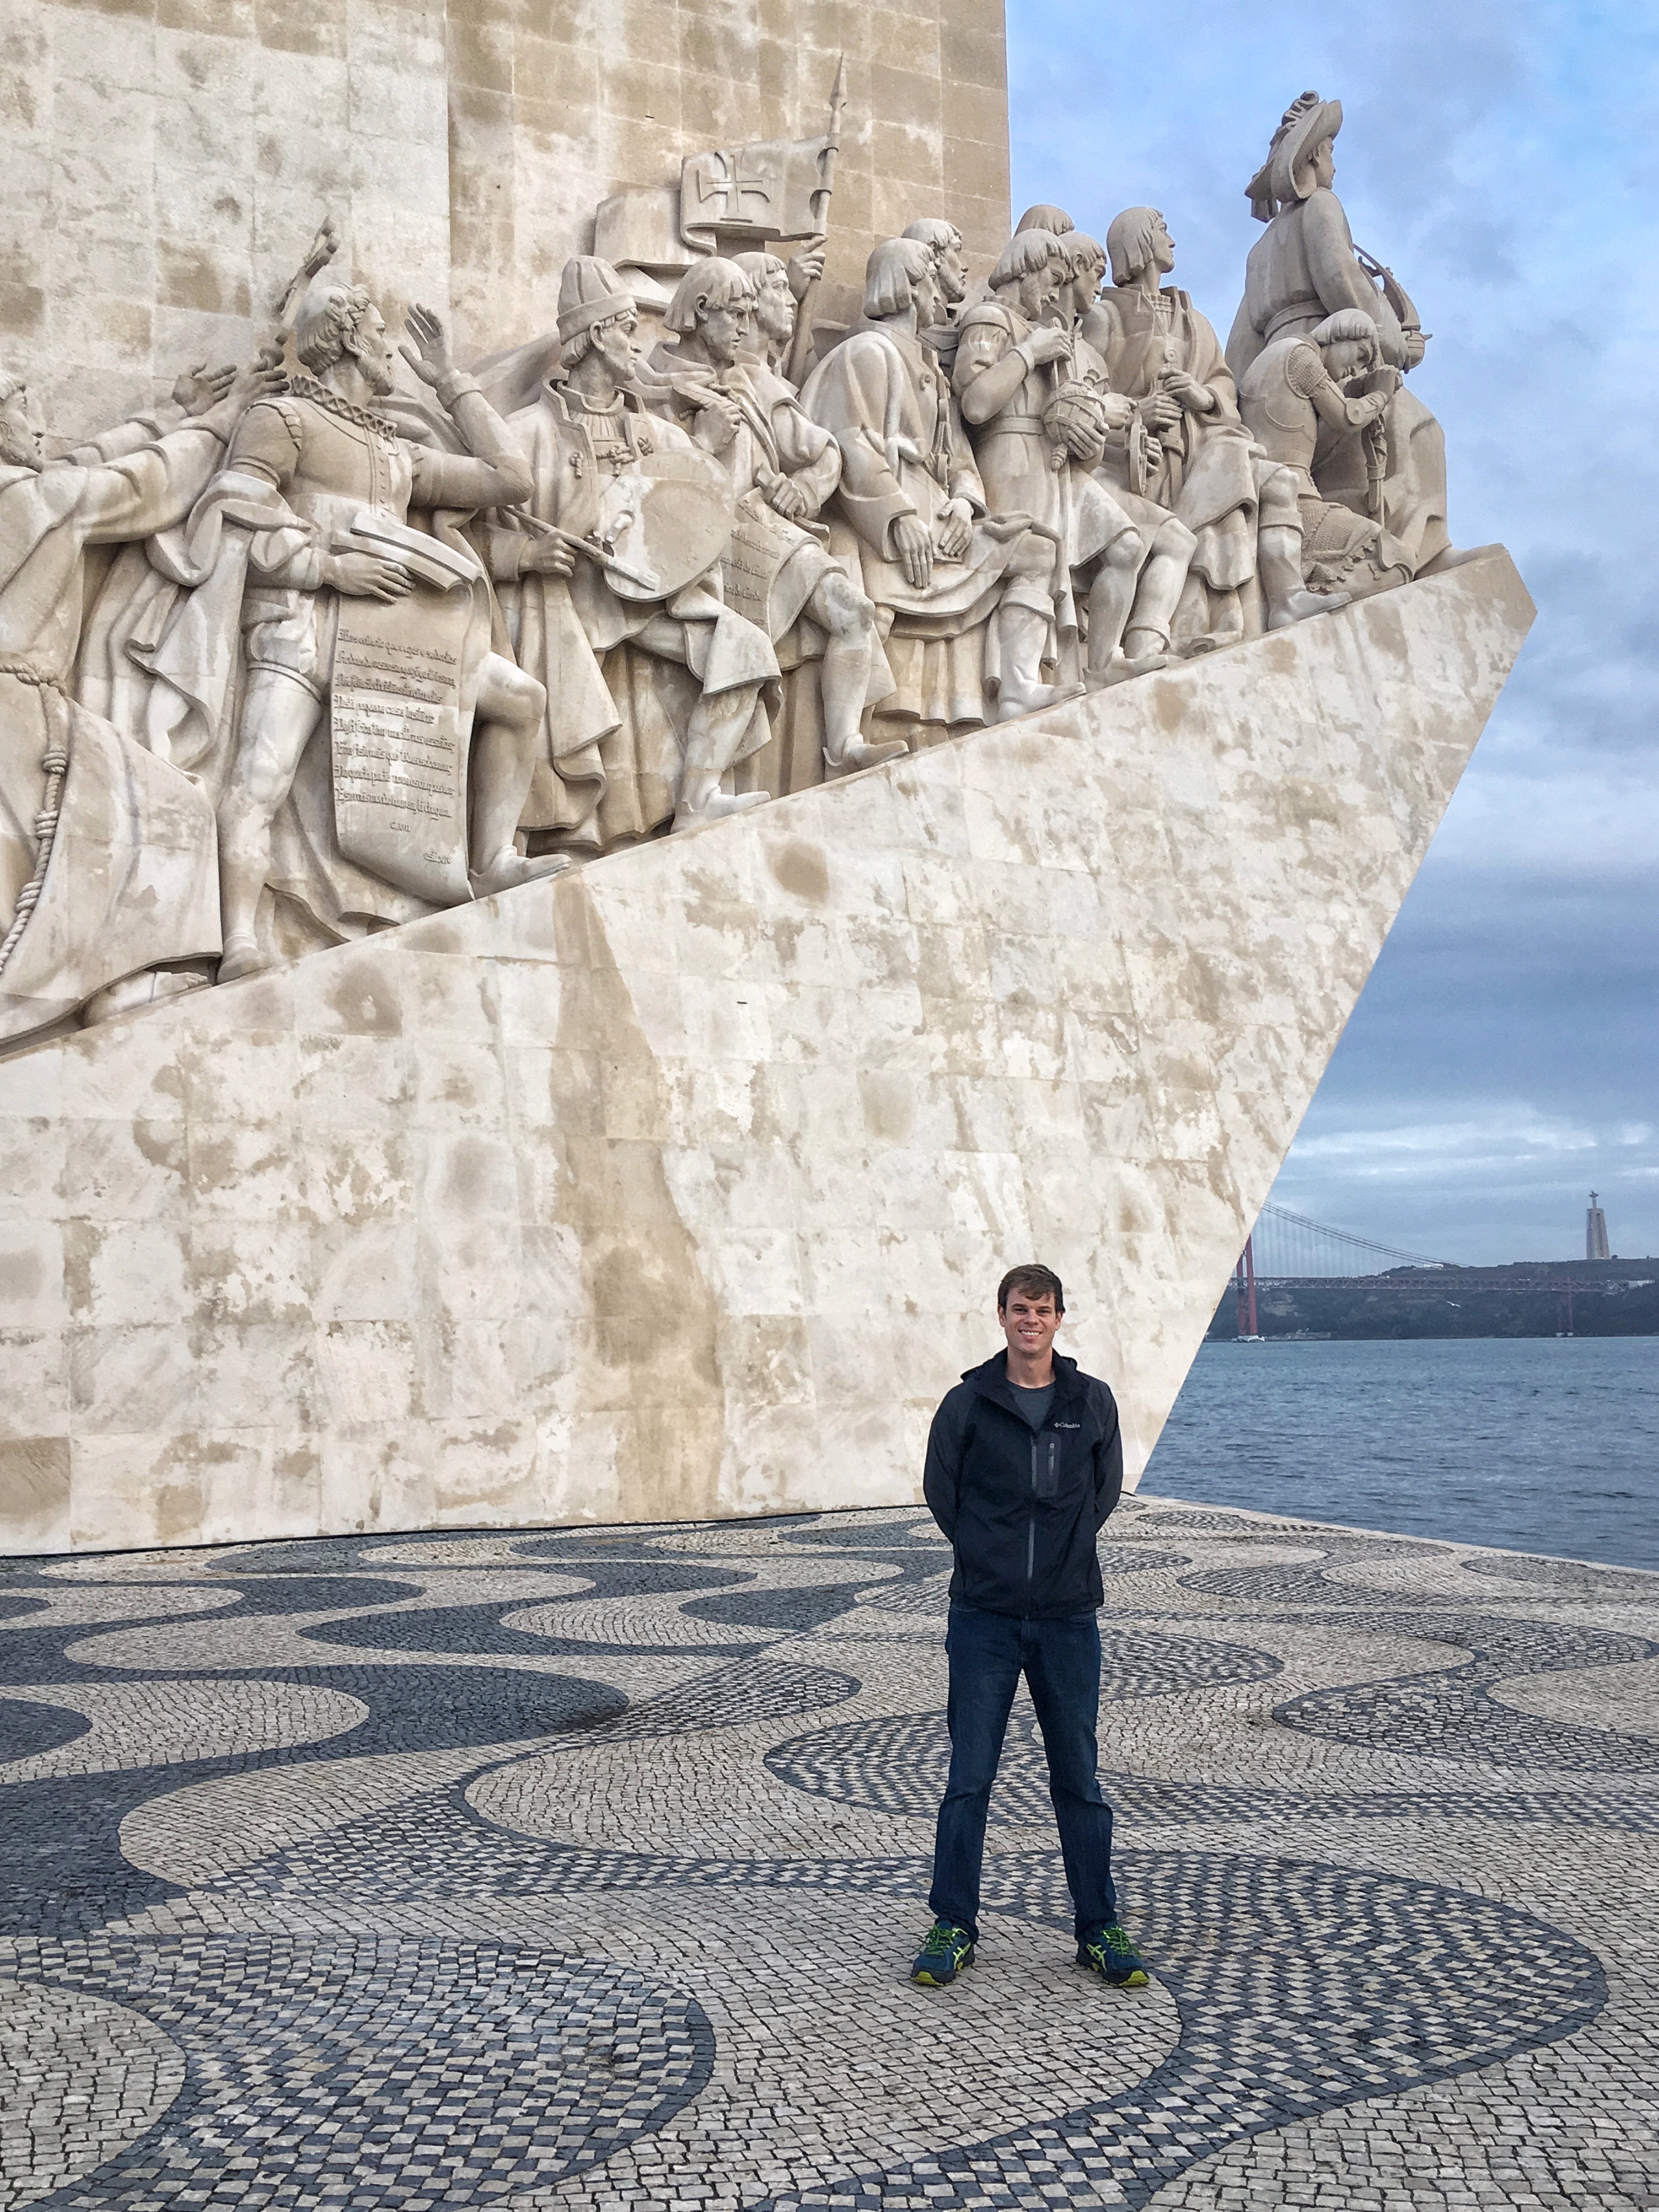 Kevin in front of the Padrão dos Descobrimentos sculpture in Lisbon